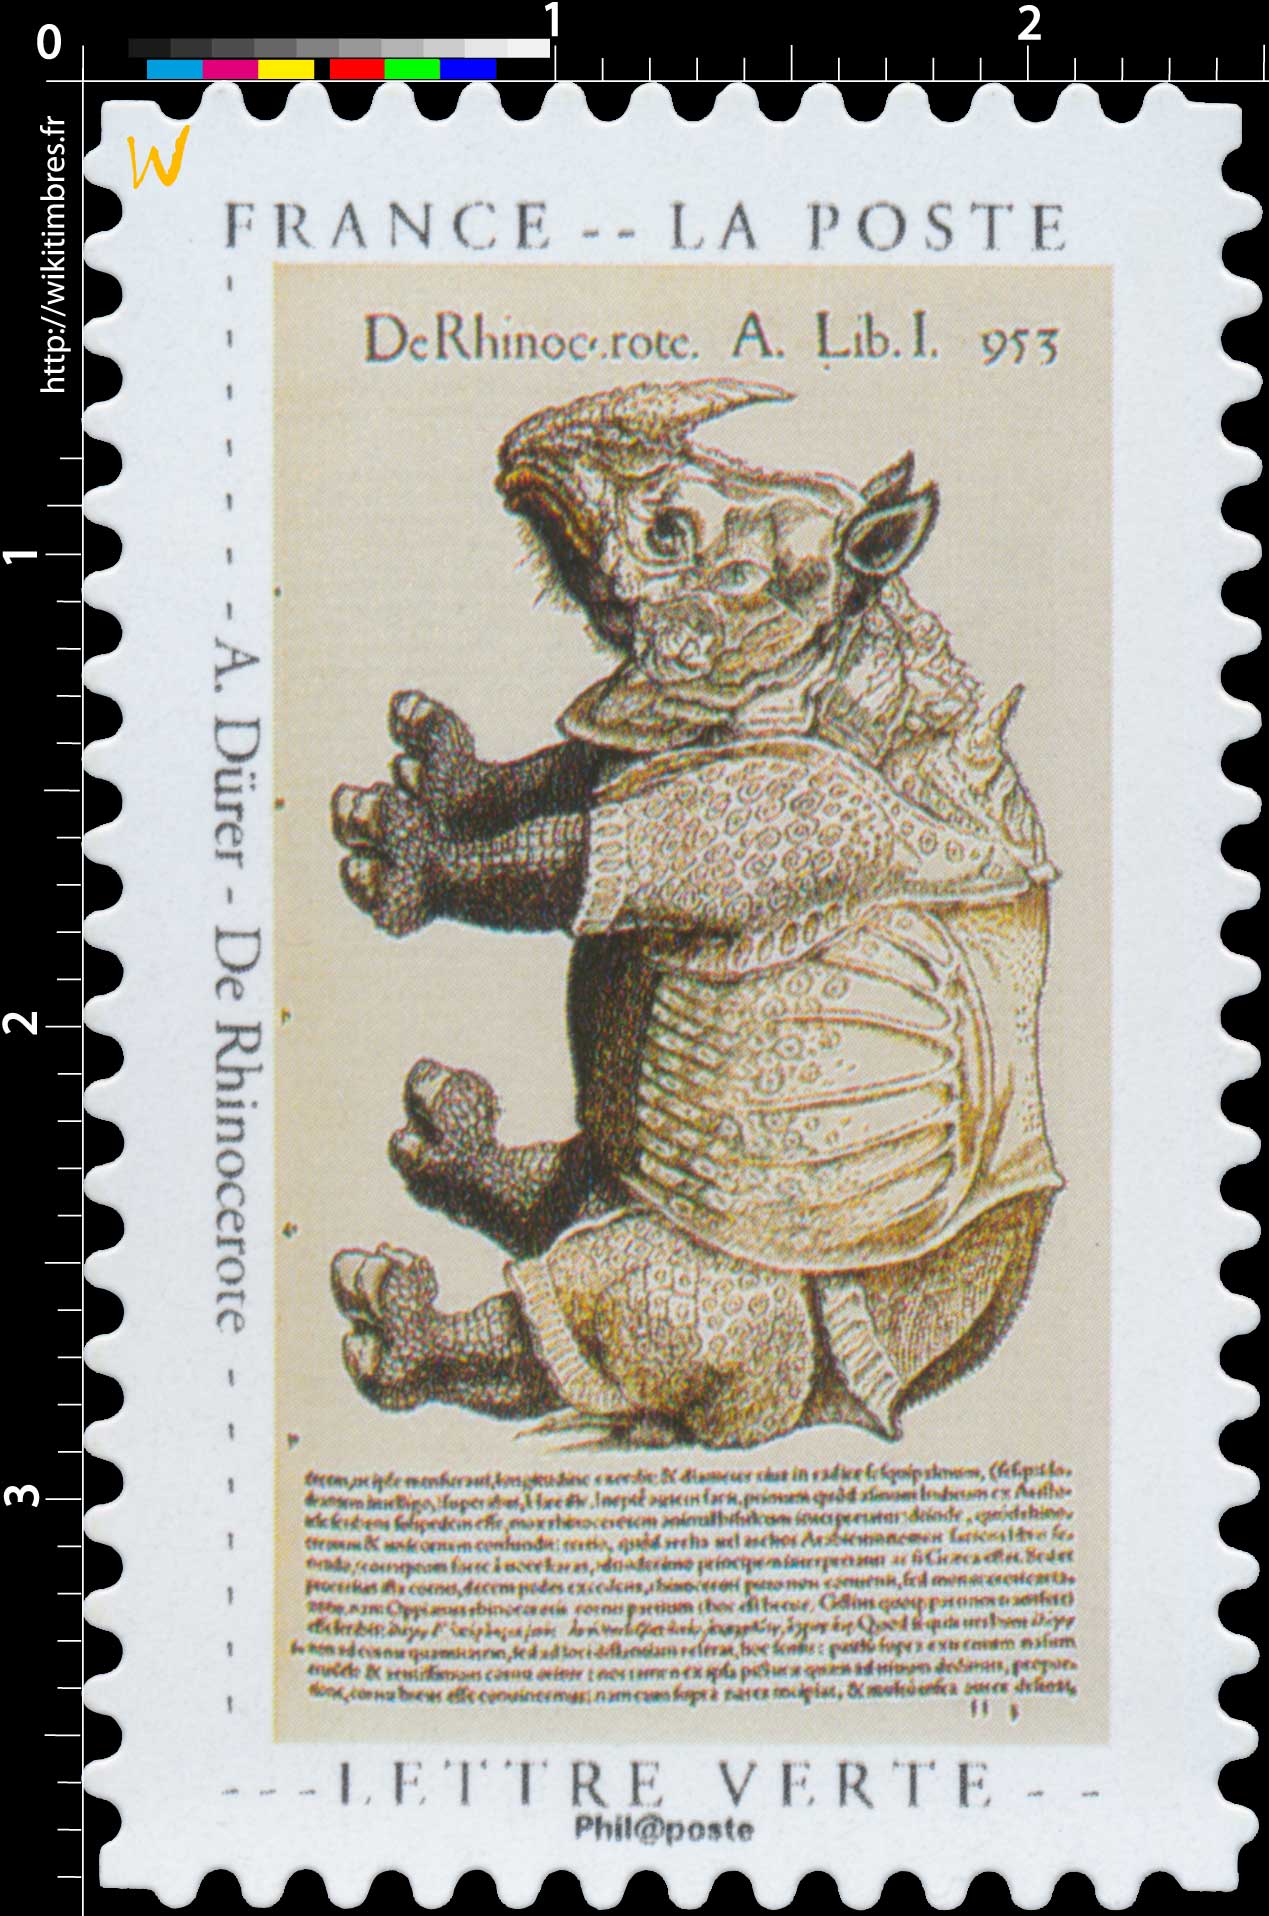 2020 A. Dürer – De Rhinocerote